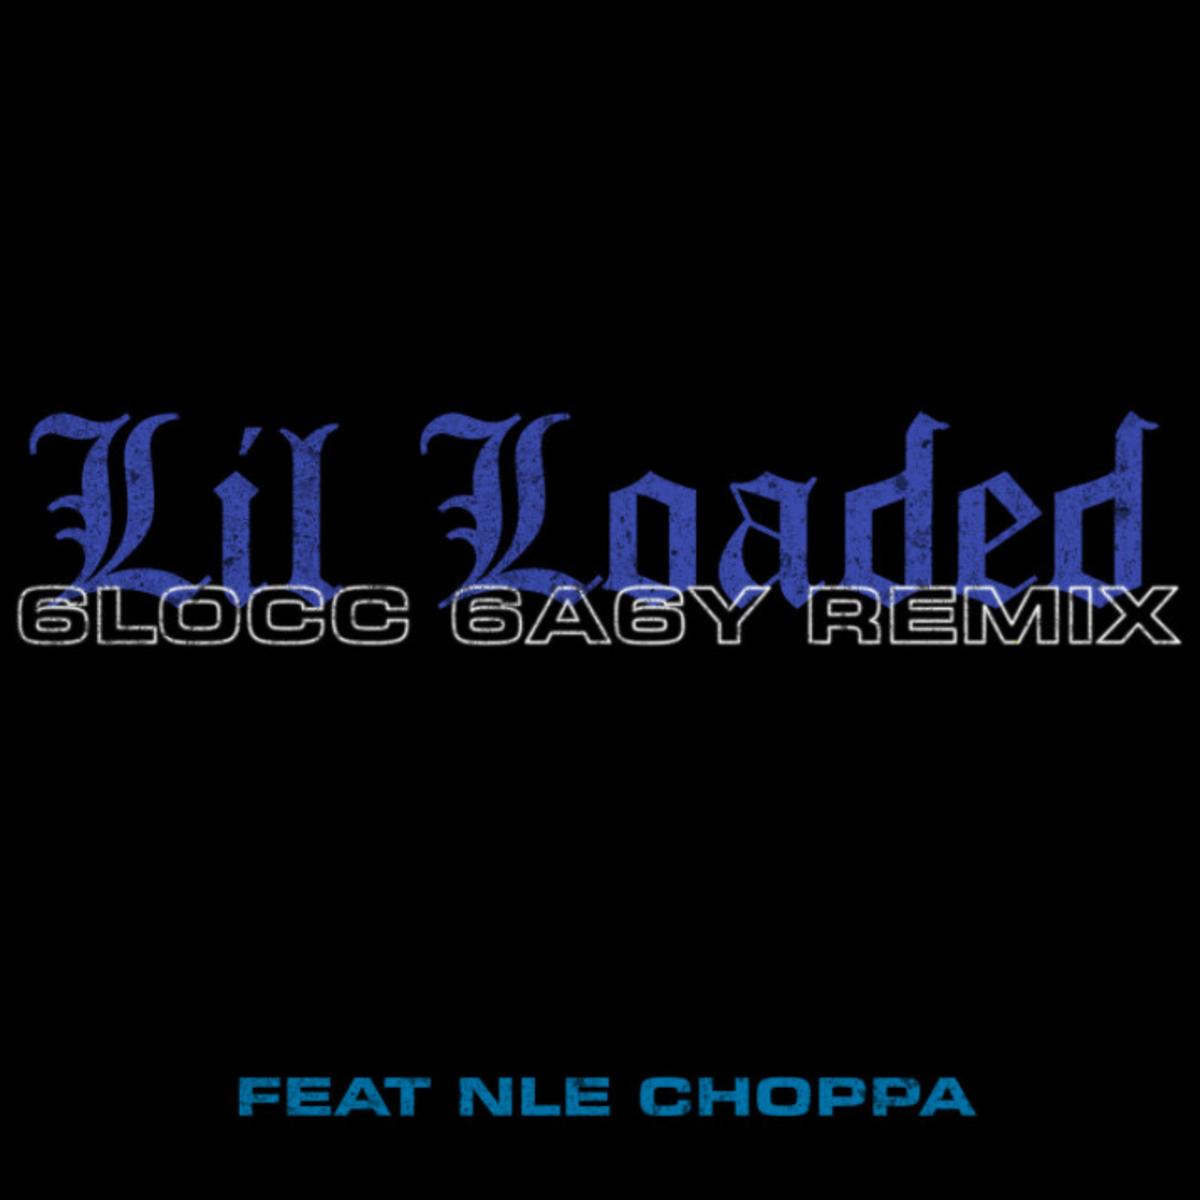 Lil Loaded 6locc 6a6y Remix Ft Nle Choppa Audio Lyrics